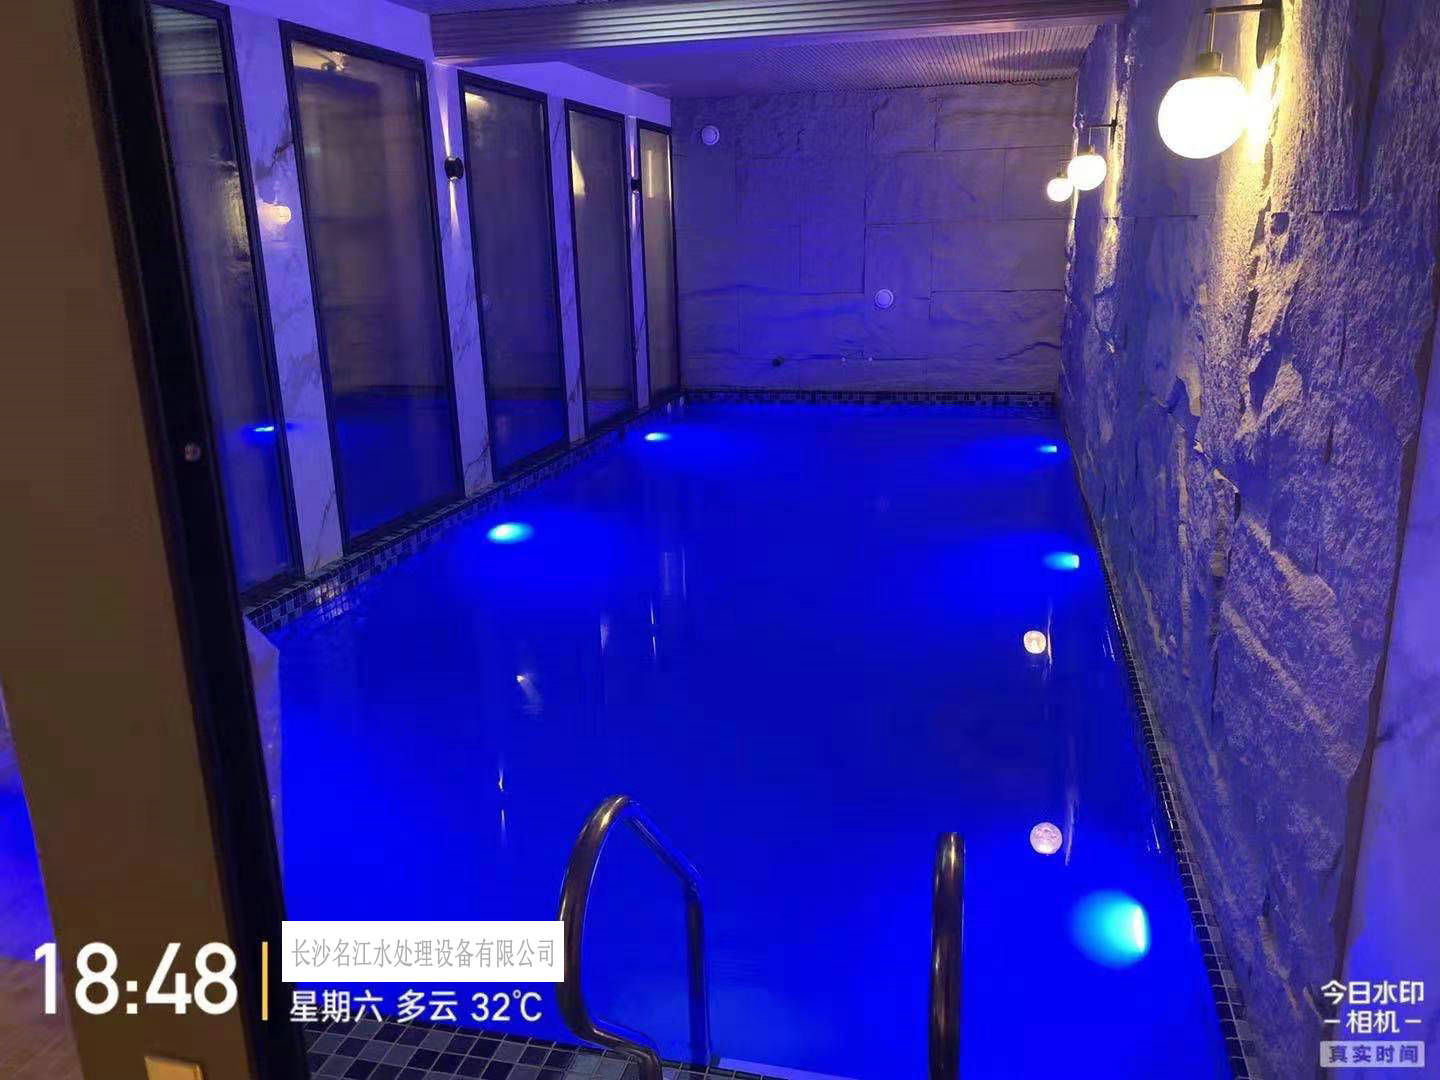 长沙平和墅侯总室内游泳池